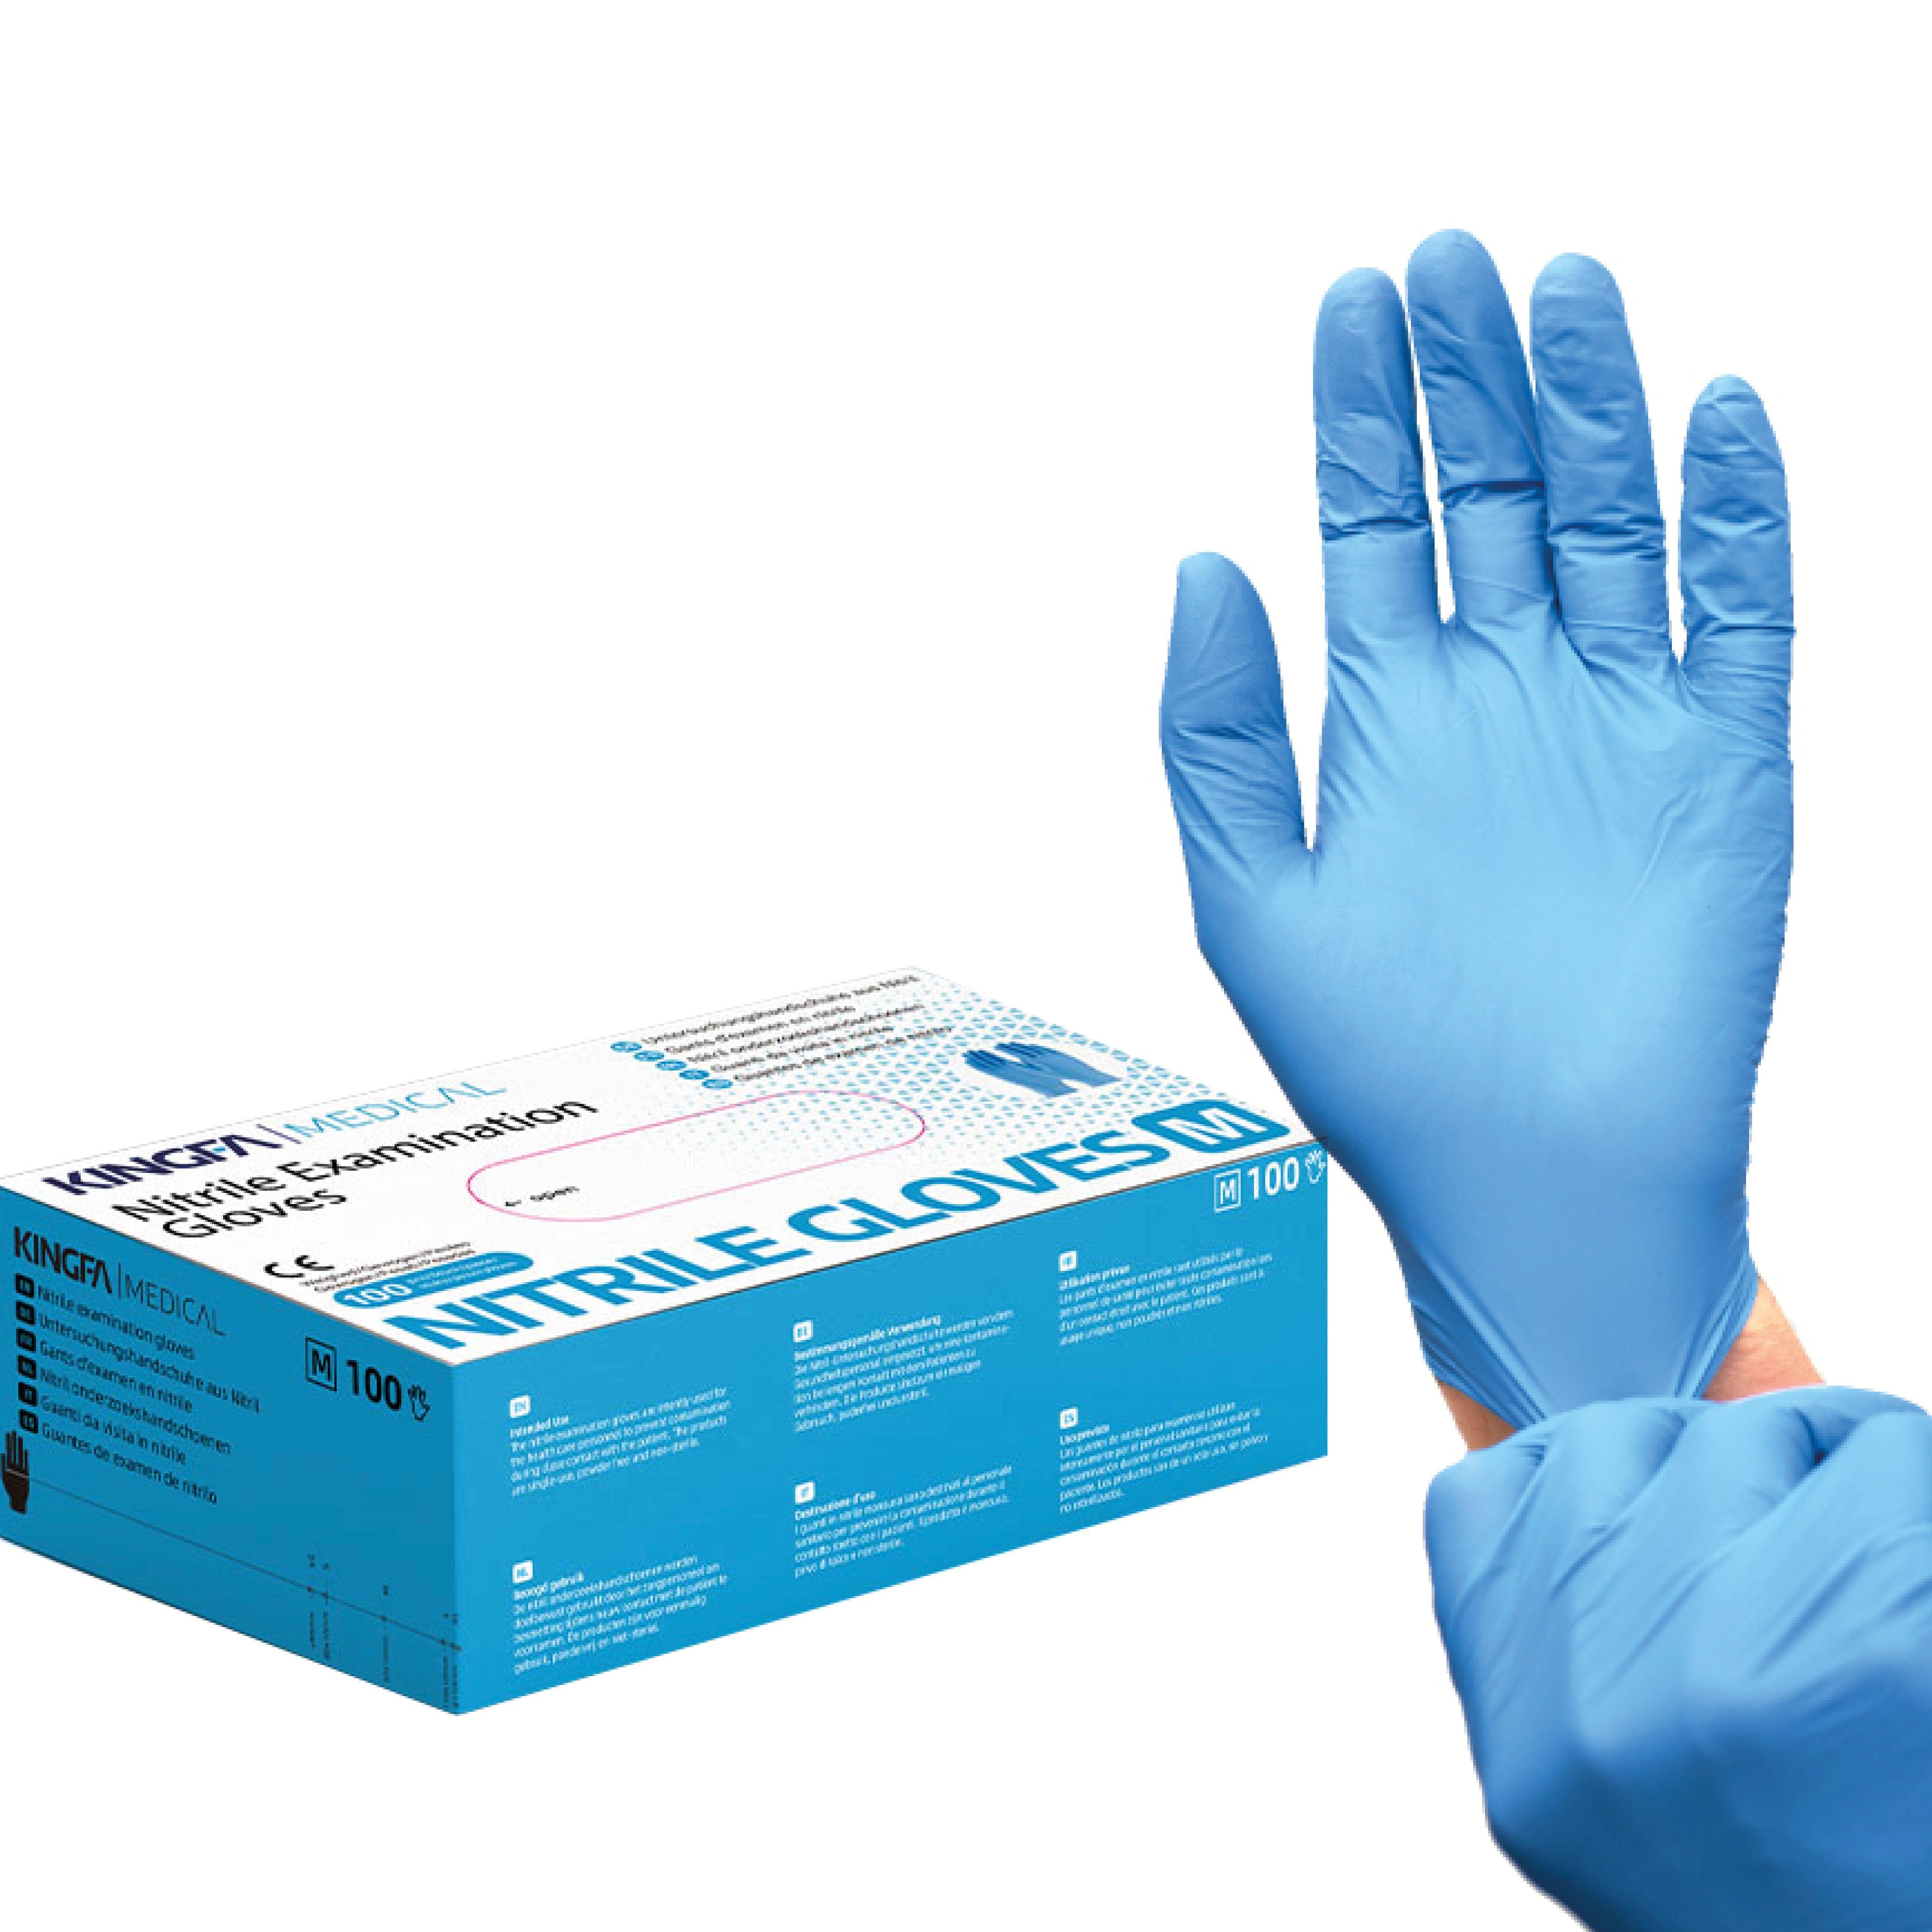 (Medizinische Zum Kingfa Qualitätsware) Nitril-Handschuhe Schutz